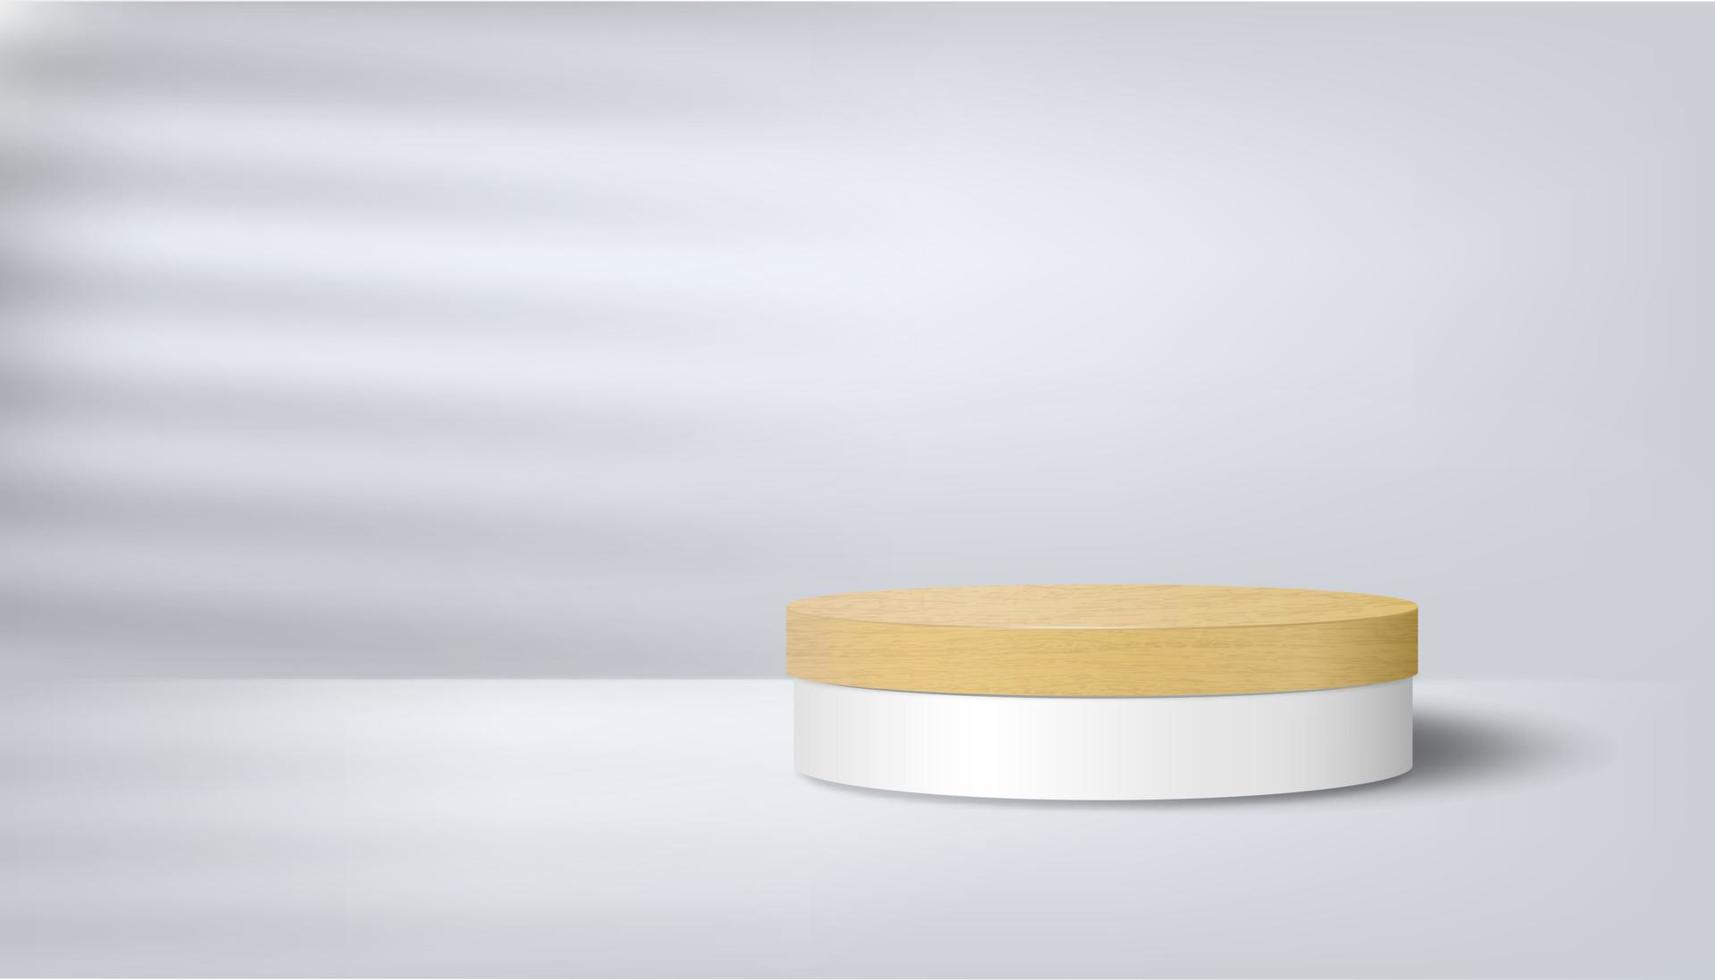 scène minimaliste abstraite avec un podium en bois sur fond blanc avec des ombres. présentation de produits, aménagement, démonstration de produits cosmétiques, socle ou estrade de scène. vecteur 3d